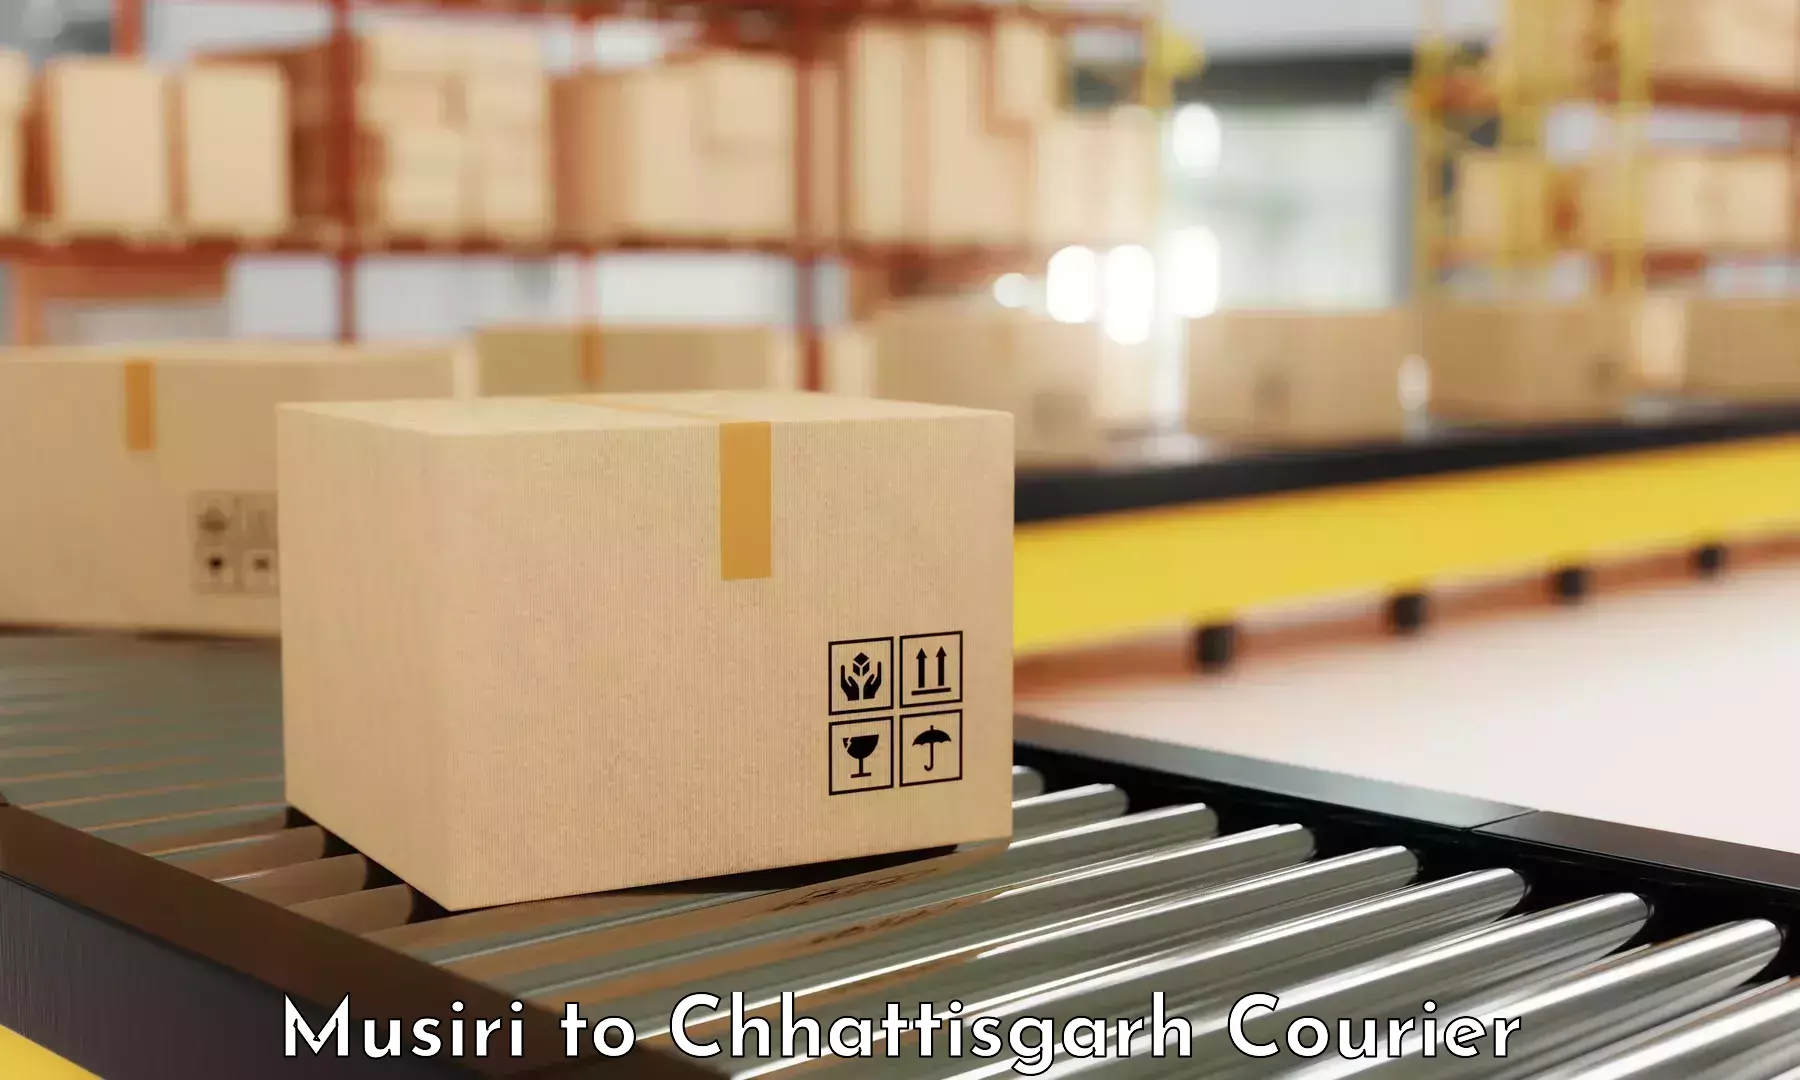 High-capacity shipping options Musiri to Chhattisgarh